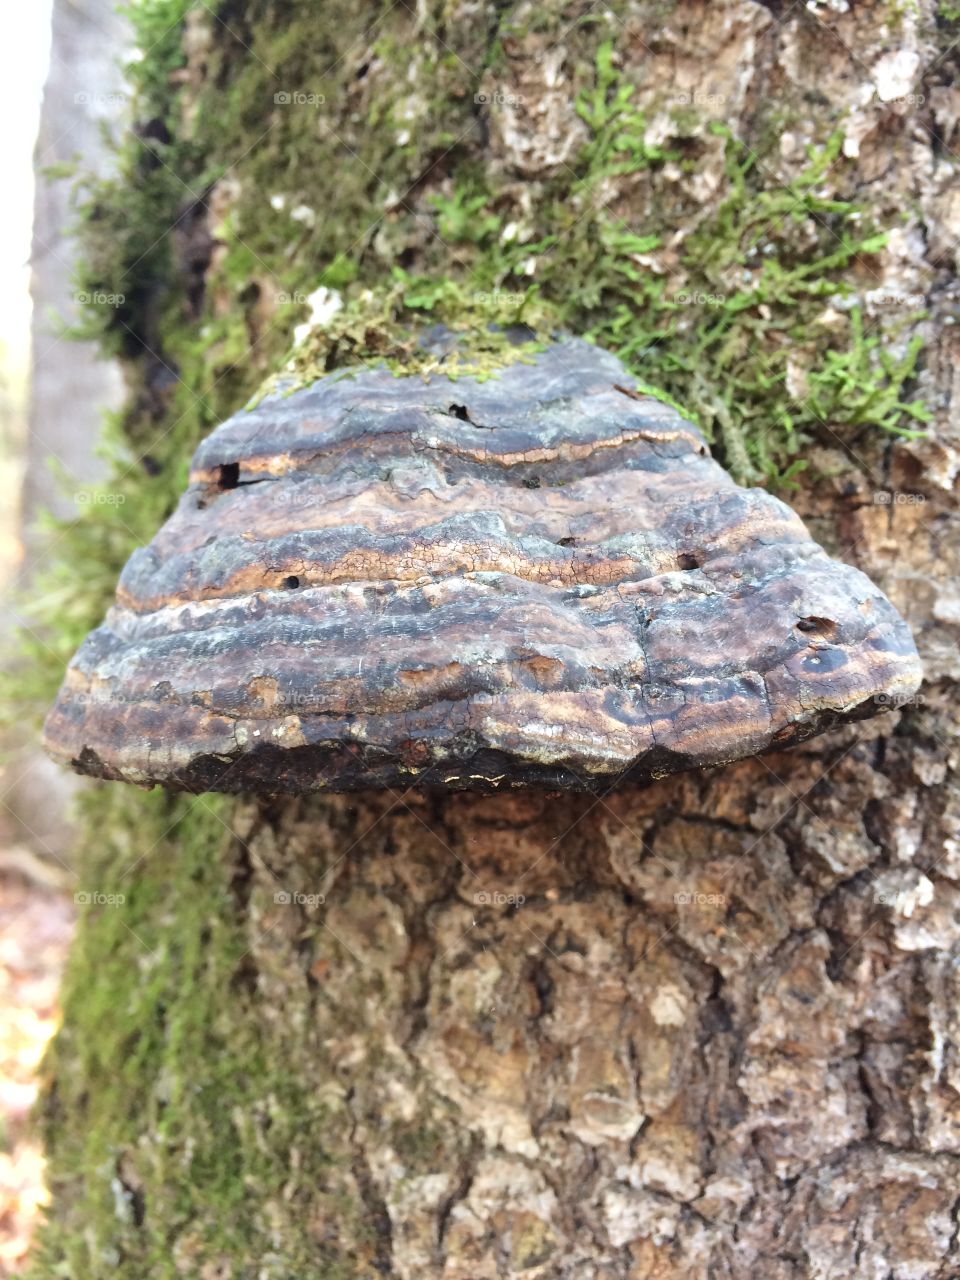 Mushroom on a dead log